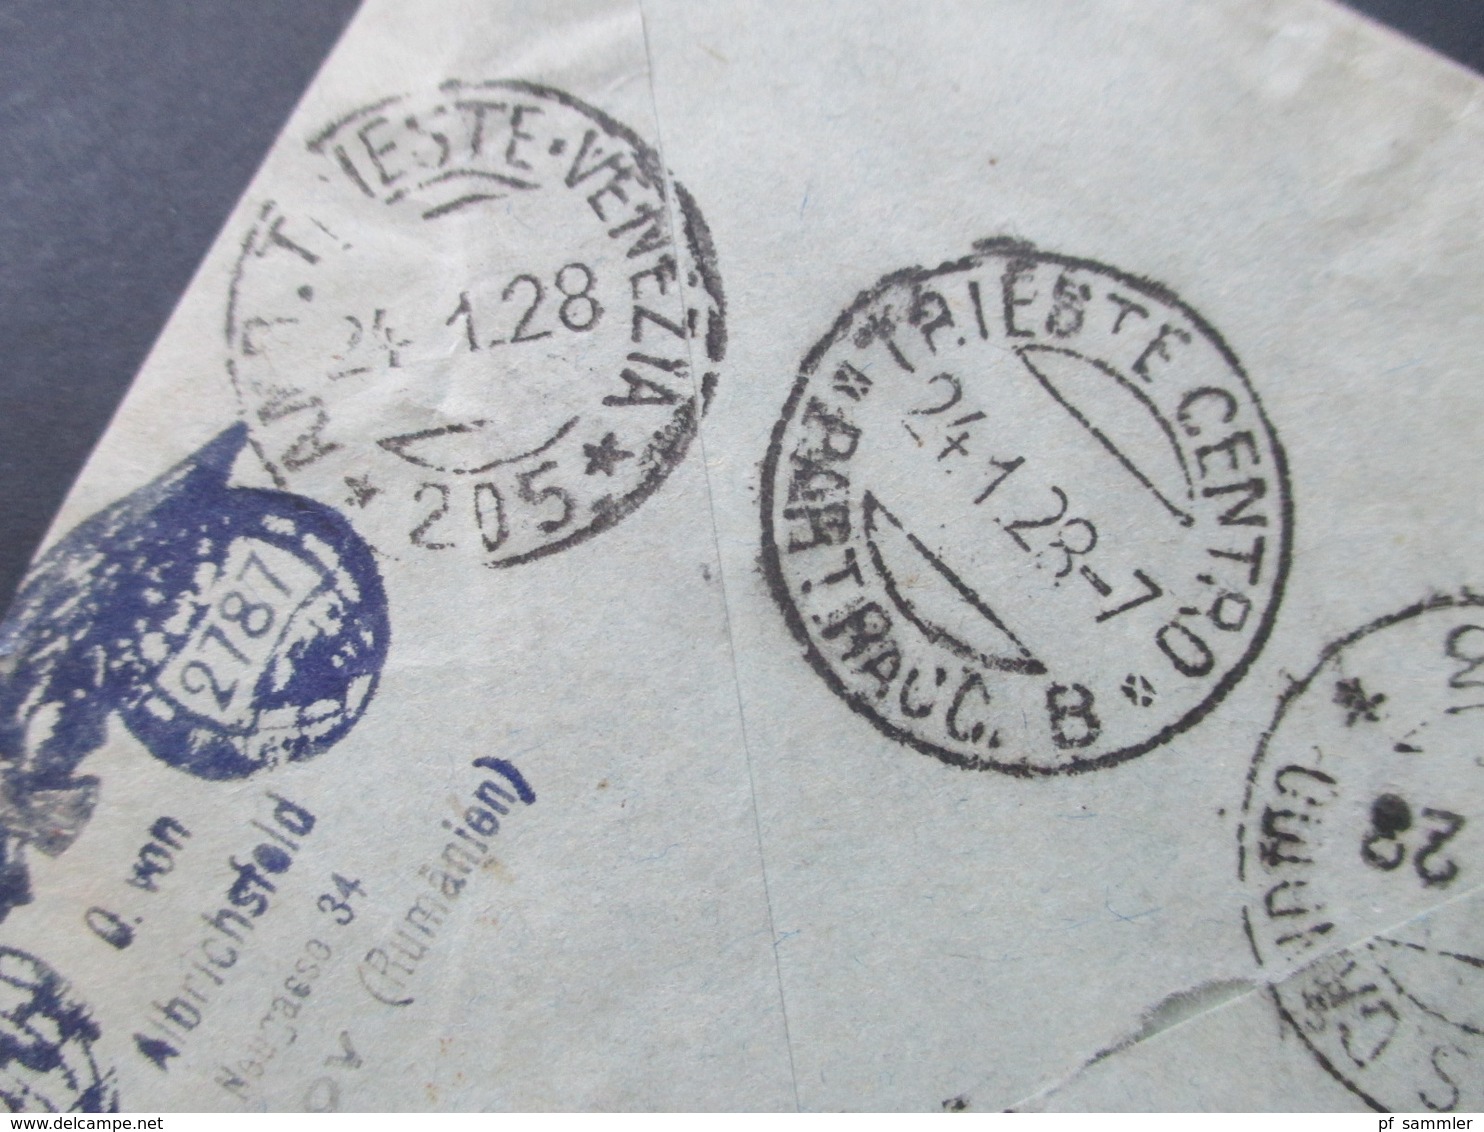 Rumänien 1928 Vierfarbenfrankatur / 4 Marken Einschreiben Brasov Central Recomandate mit 8 Stempeln nach Italien